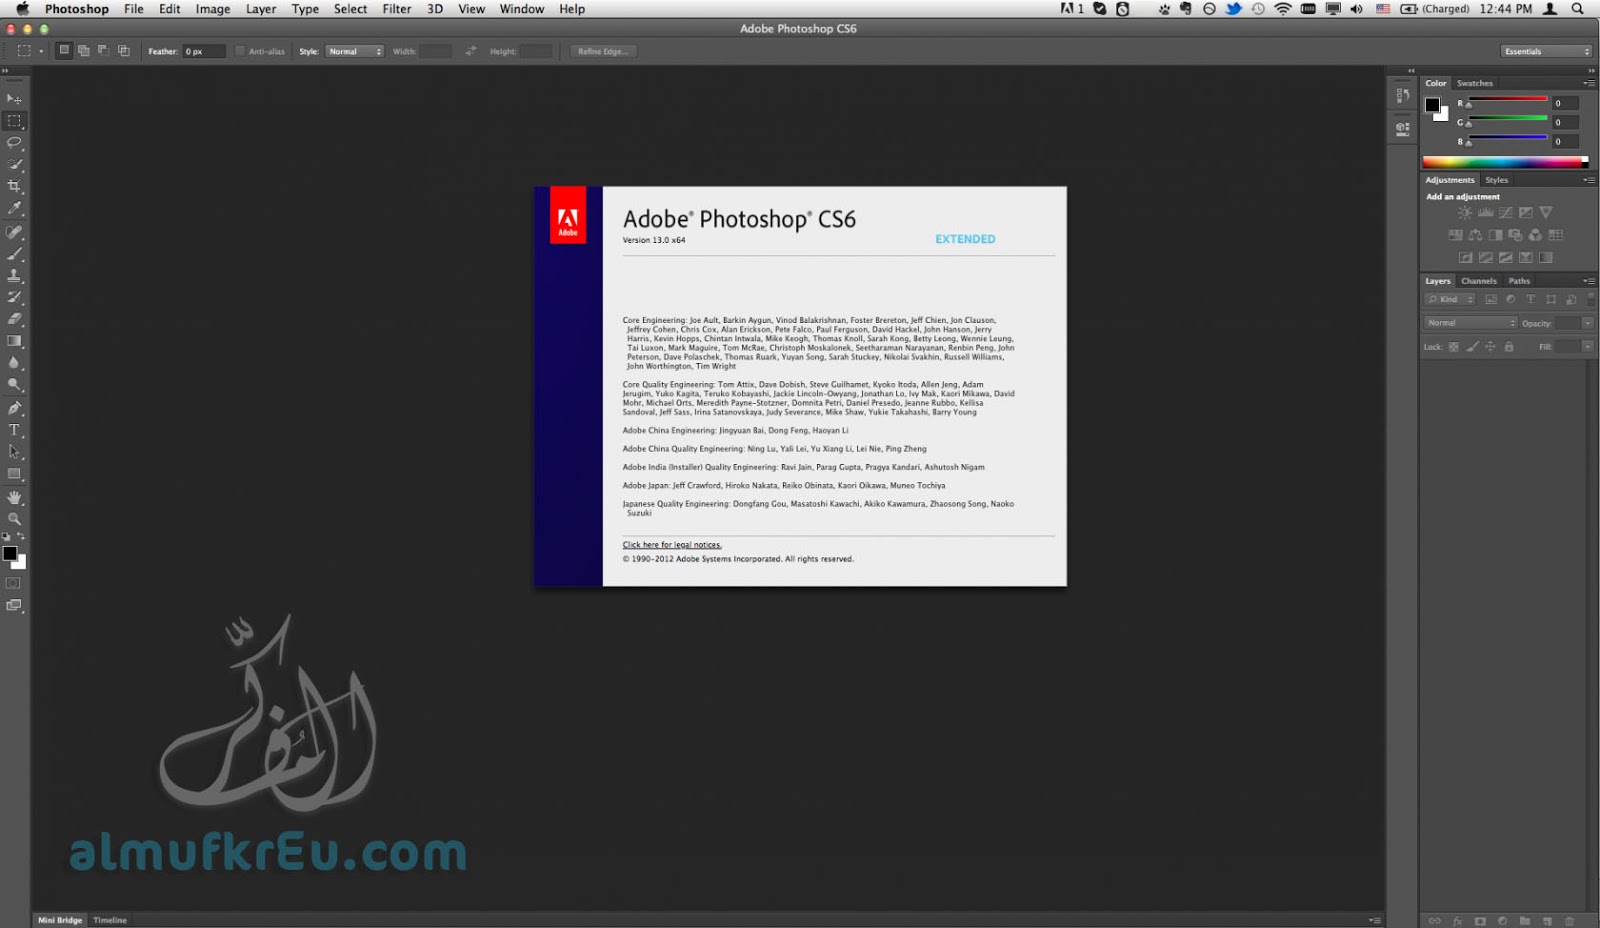 كيفية تحميل وتثبيت برنامج الفوتوشوب لنظام الماك كامل داعم للعربية | Adobe Photoshop CS6 for Mac